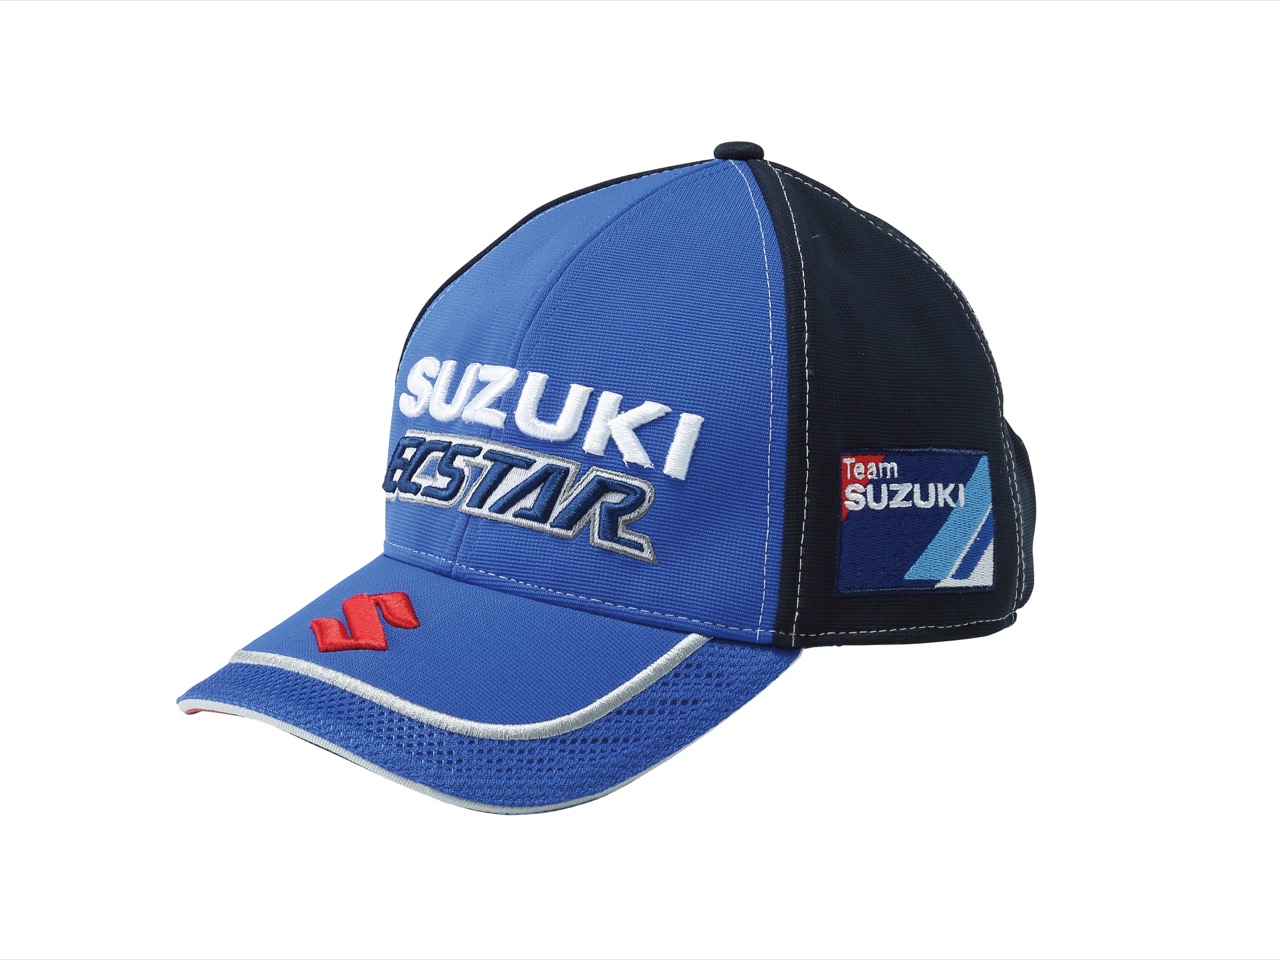 Suzuki - collezioni abbigliamento e accessori 